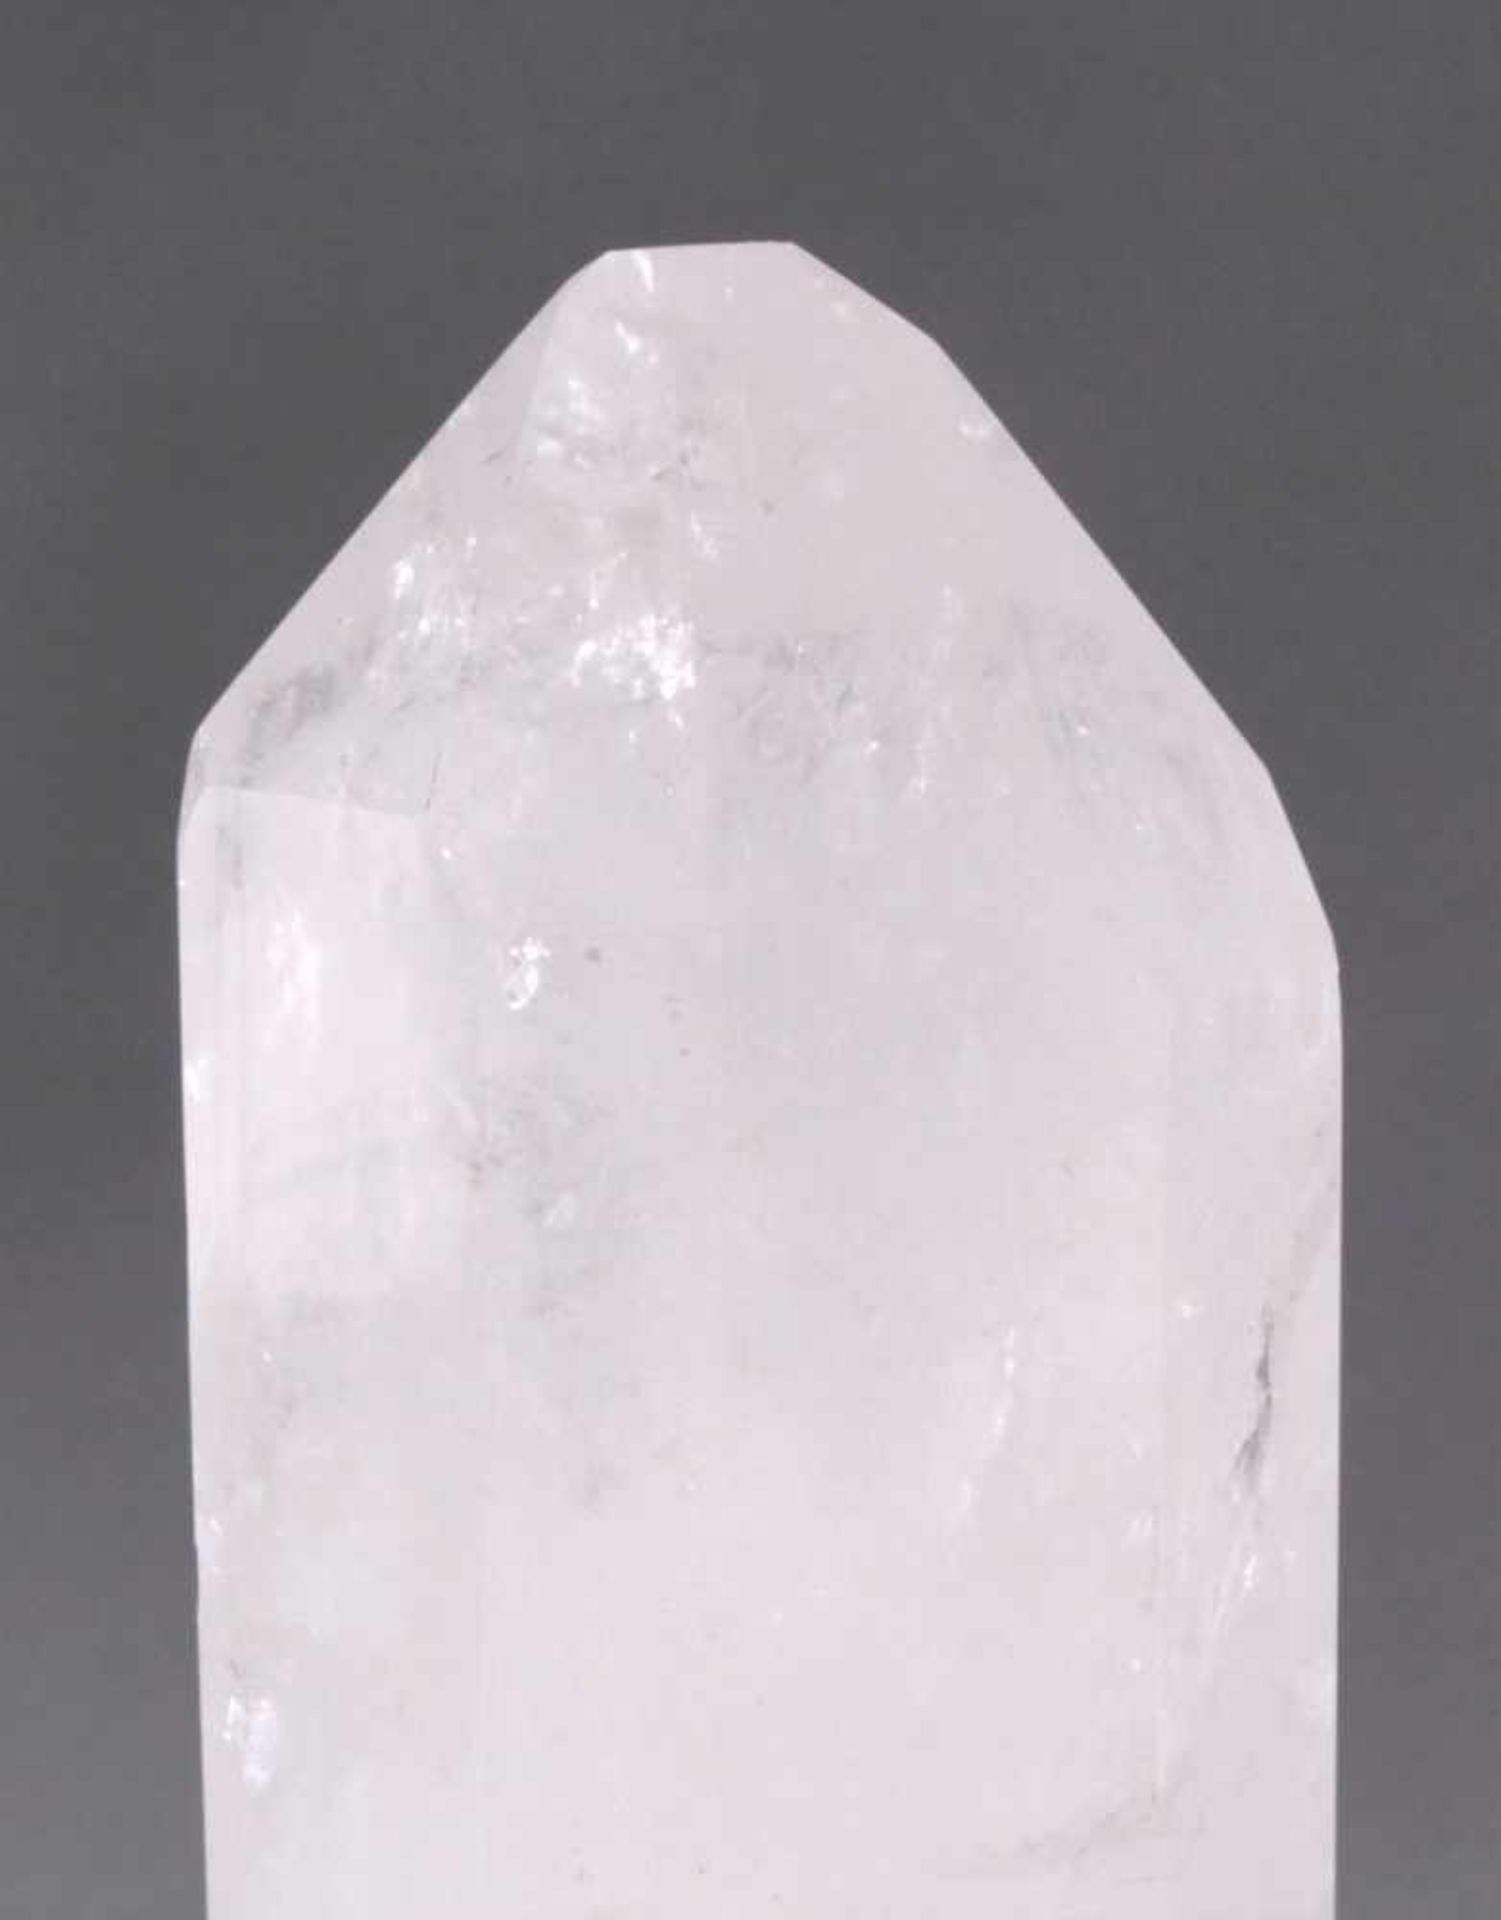 Bergkristall-Spitze in Form eines Obelsiken, 10,9kg6-Kant geschliffen, ca. 46 x 13 x 11cm - Image 2 of 3